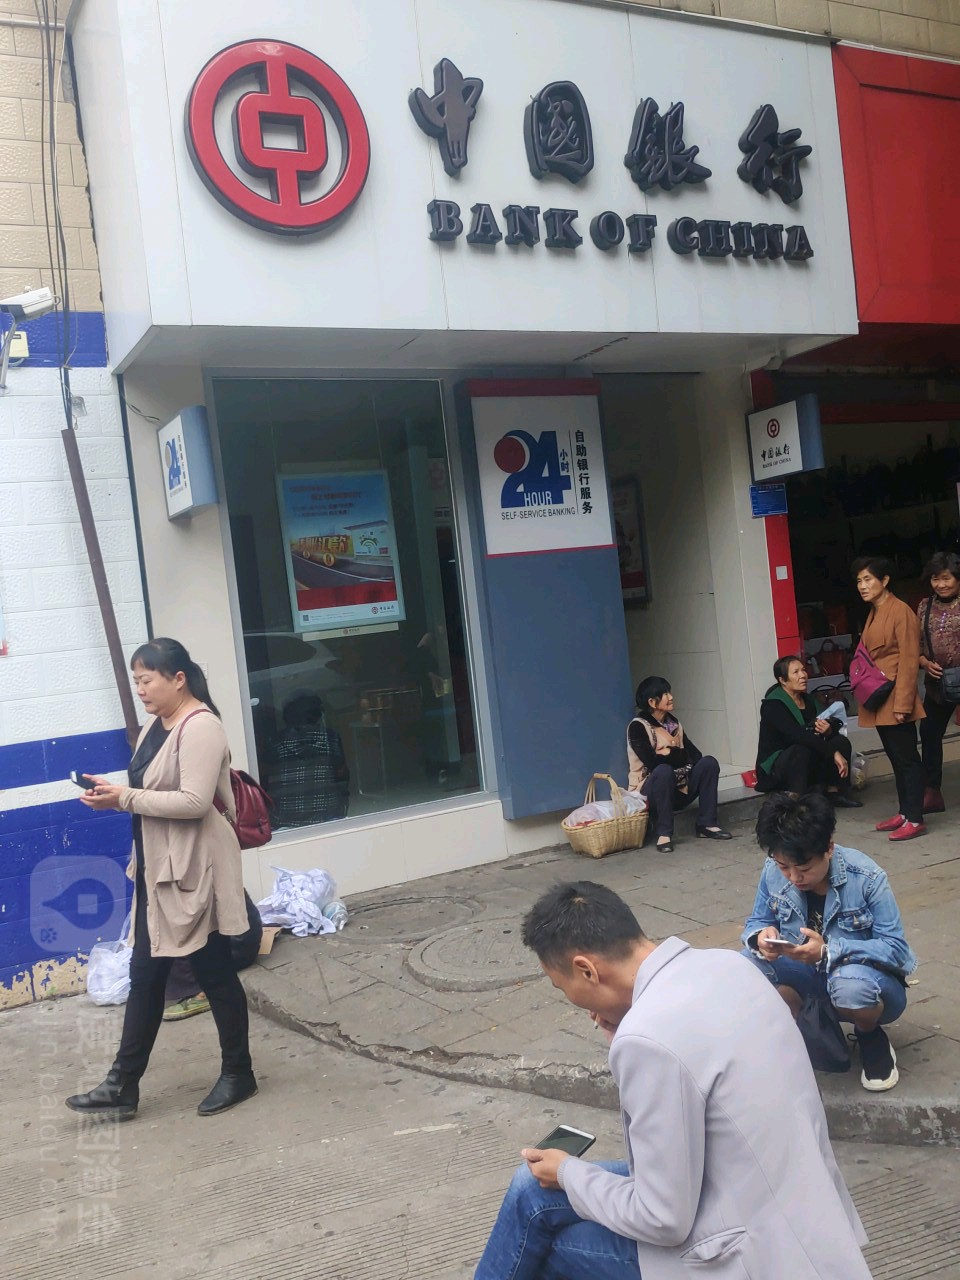 中国银行24小时自助银行(西大街店)